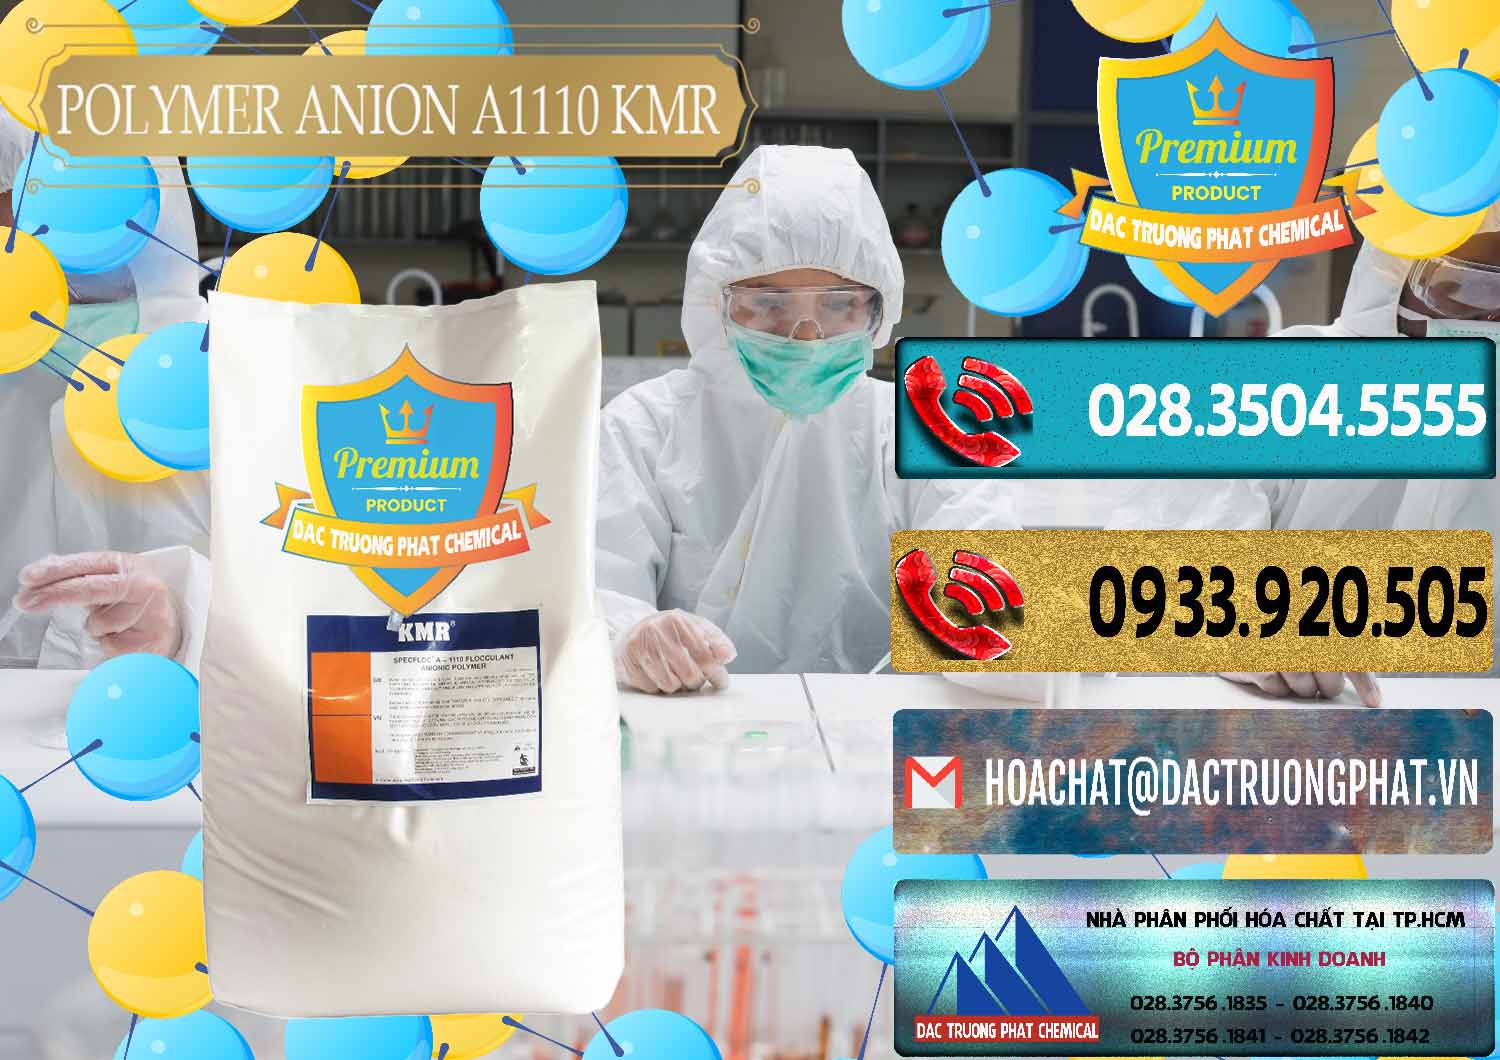 Nơi kinh doanh - bán Polymer Anion A1110 - KMR Anh Quốc England - 0118 - Chuyên kinh doanh và cung cấp hóa chất tại TP.HCM - hoachatdetnhuom.com